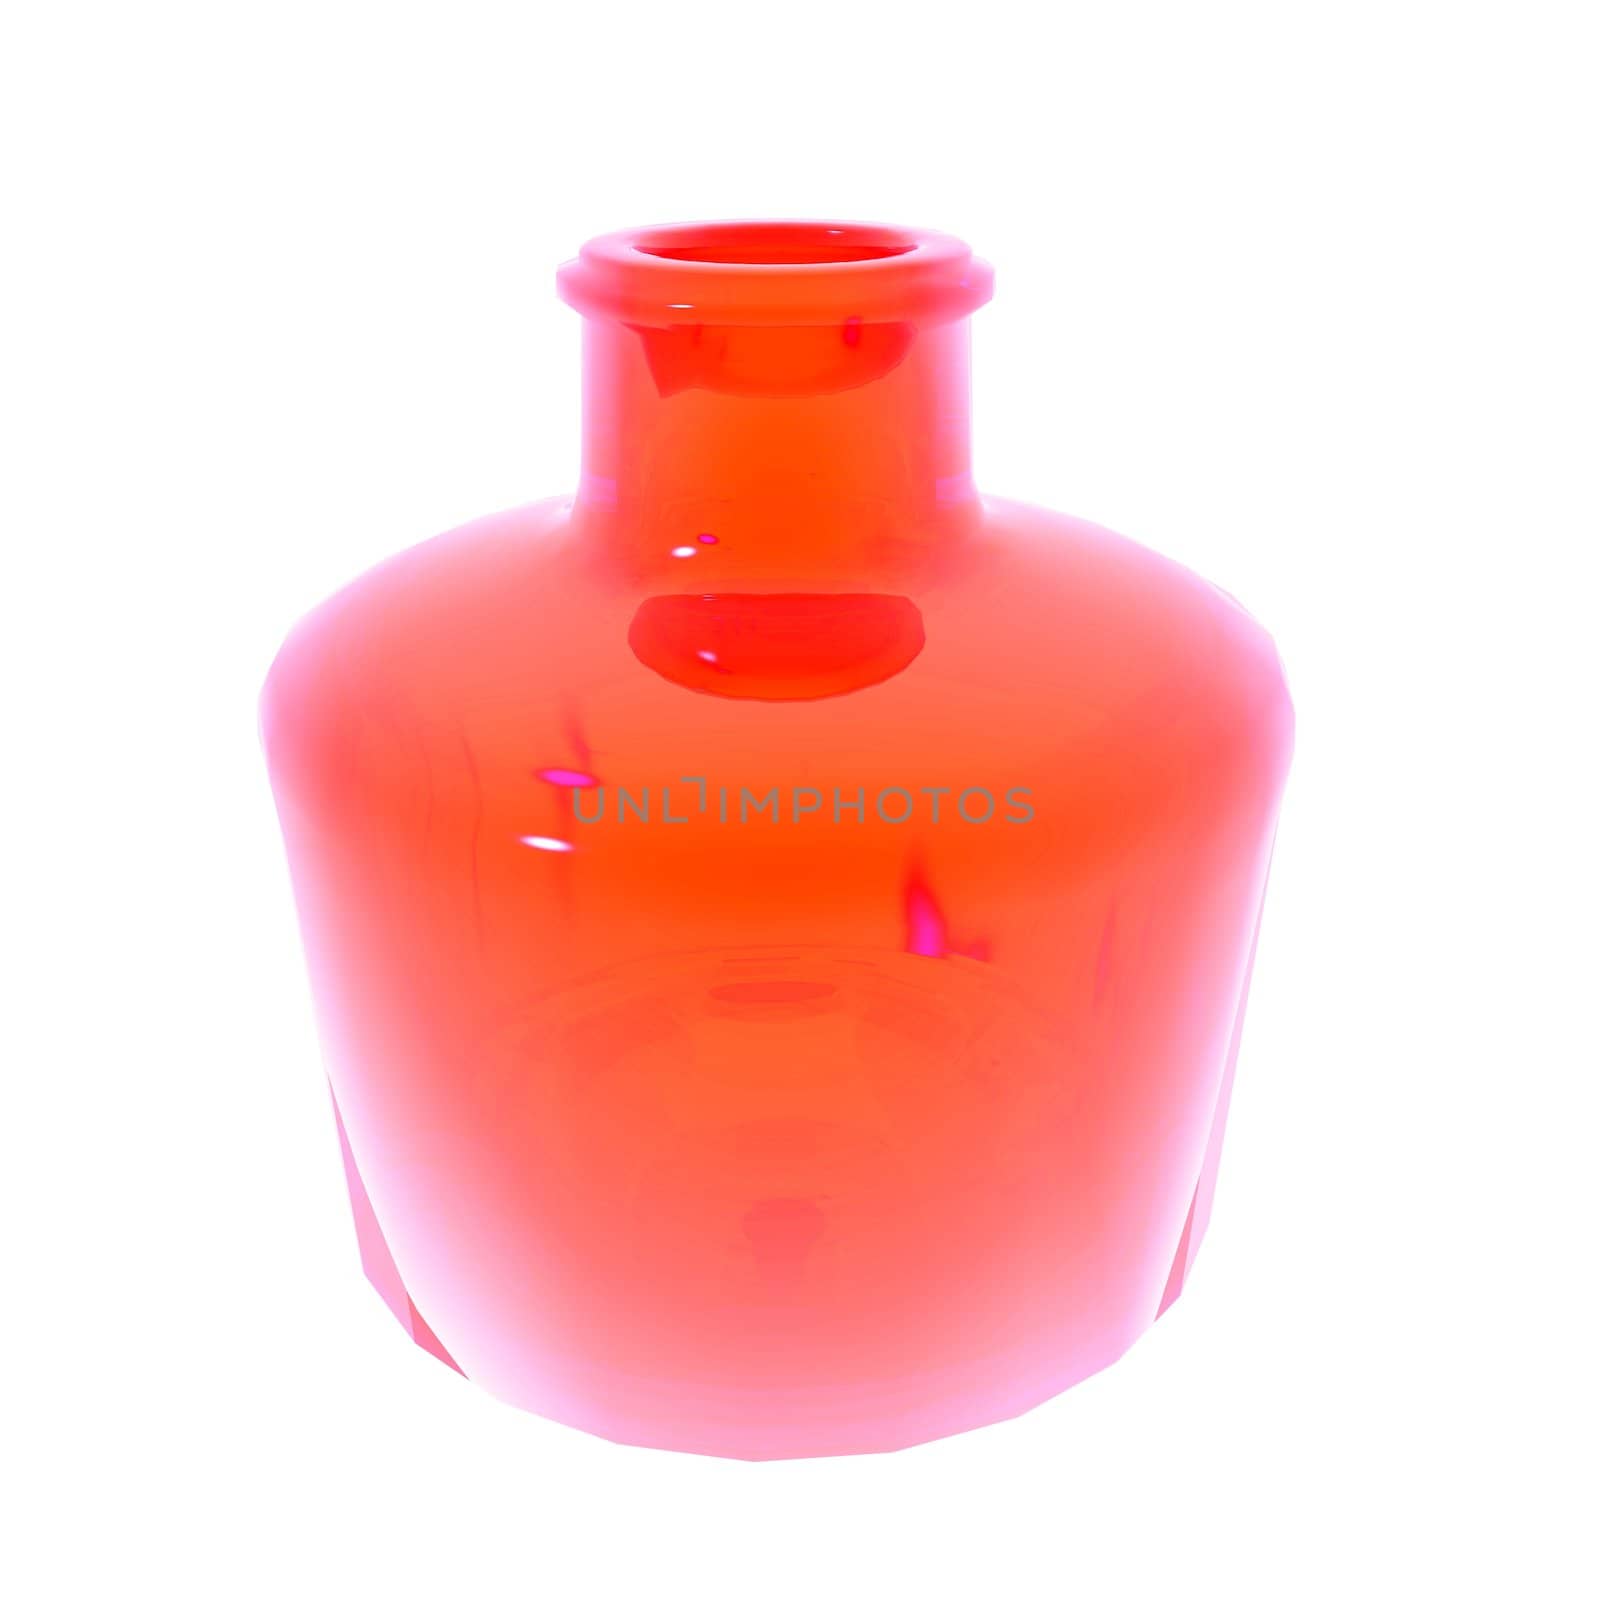 Red Vase by jasony00